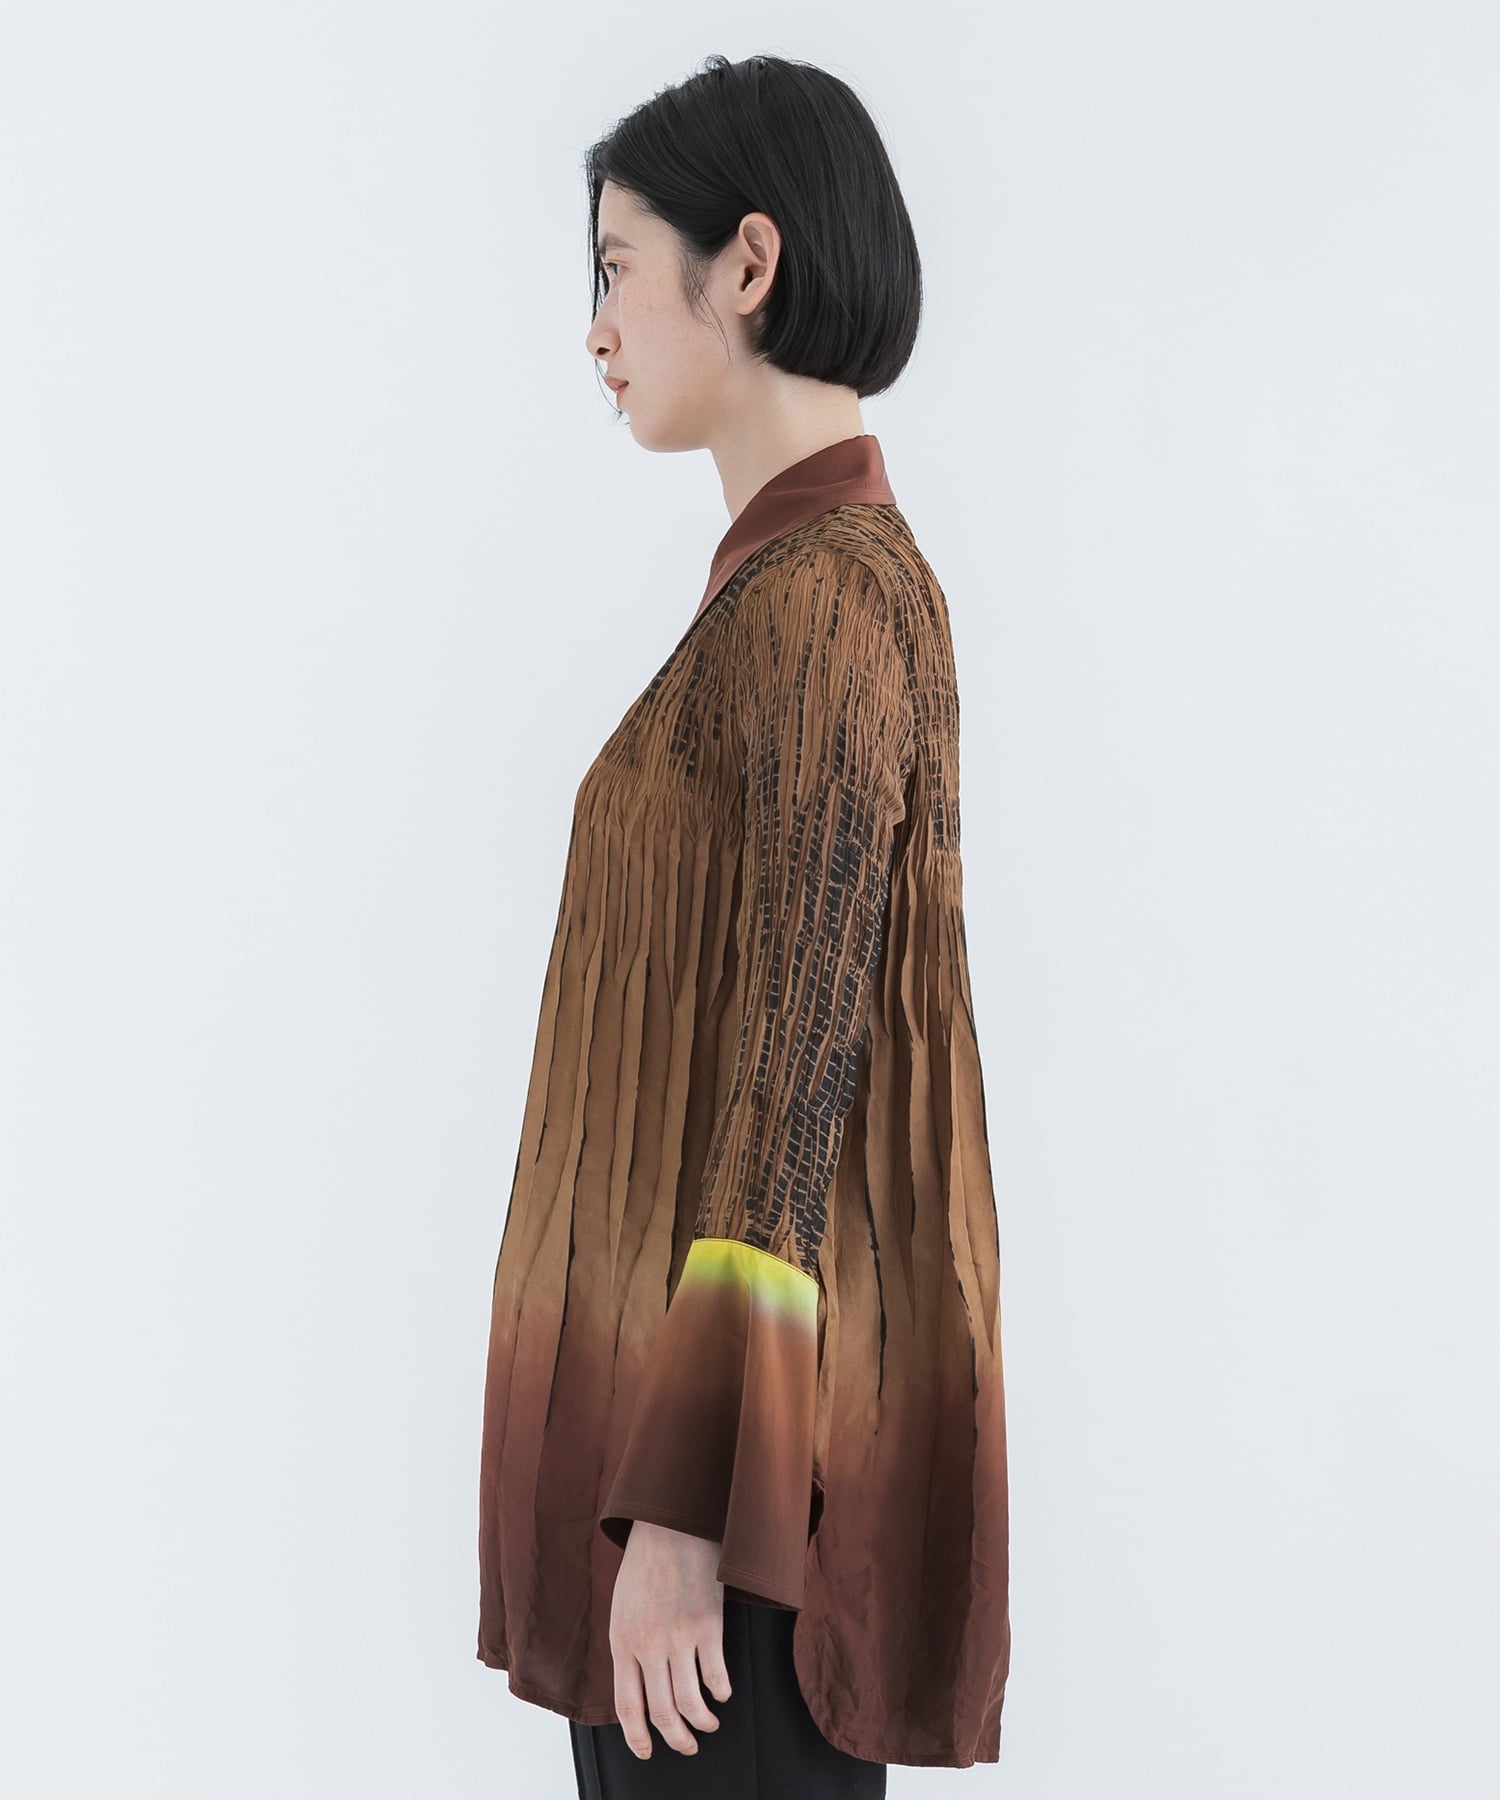 Arimatsu Shibori Ombre Dyed Silk Shirt(1 BROWN): Mame Kurogouchi 